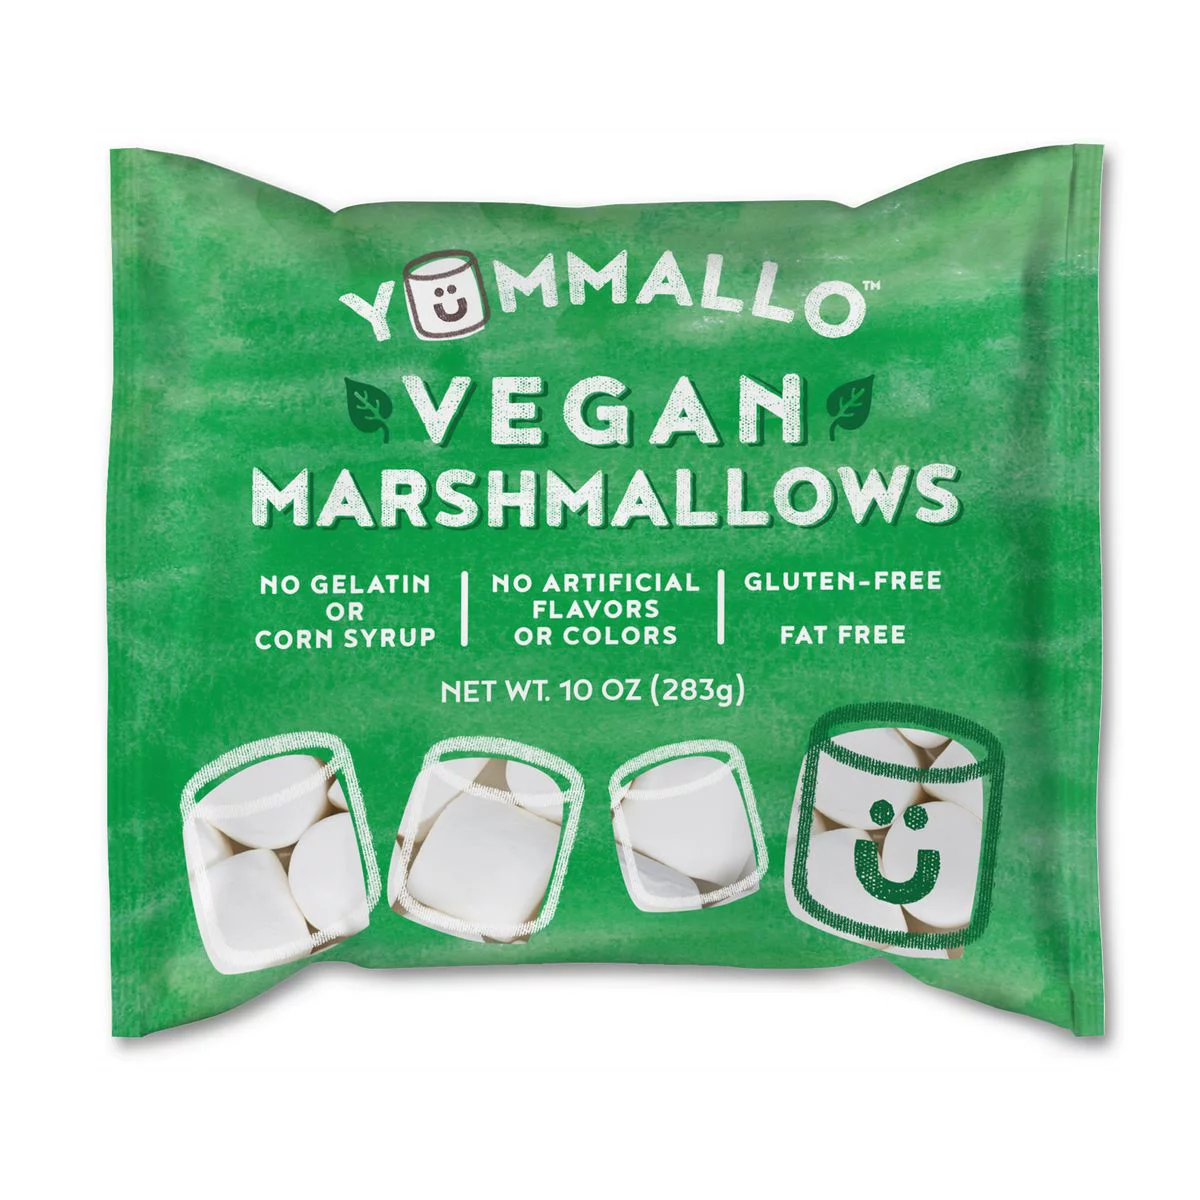 Walmart vegan marshmallows , vegan snack